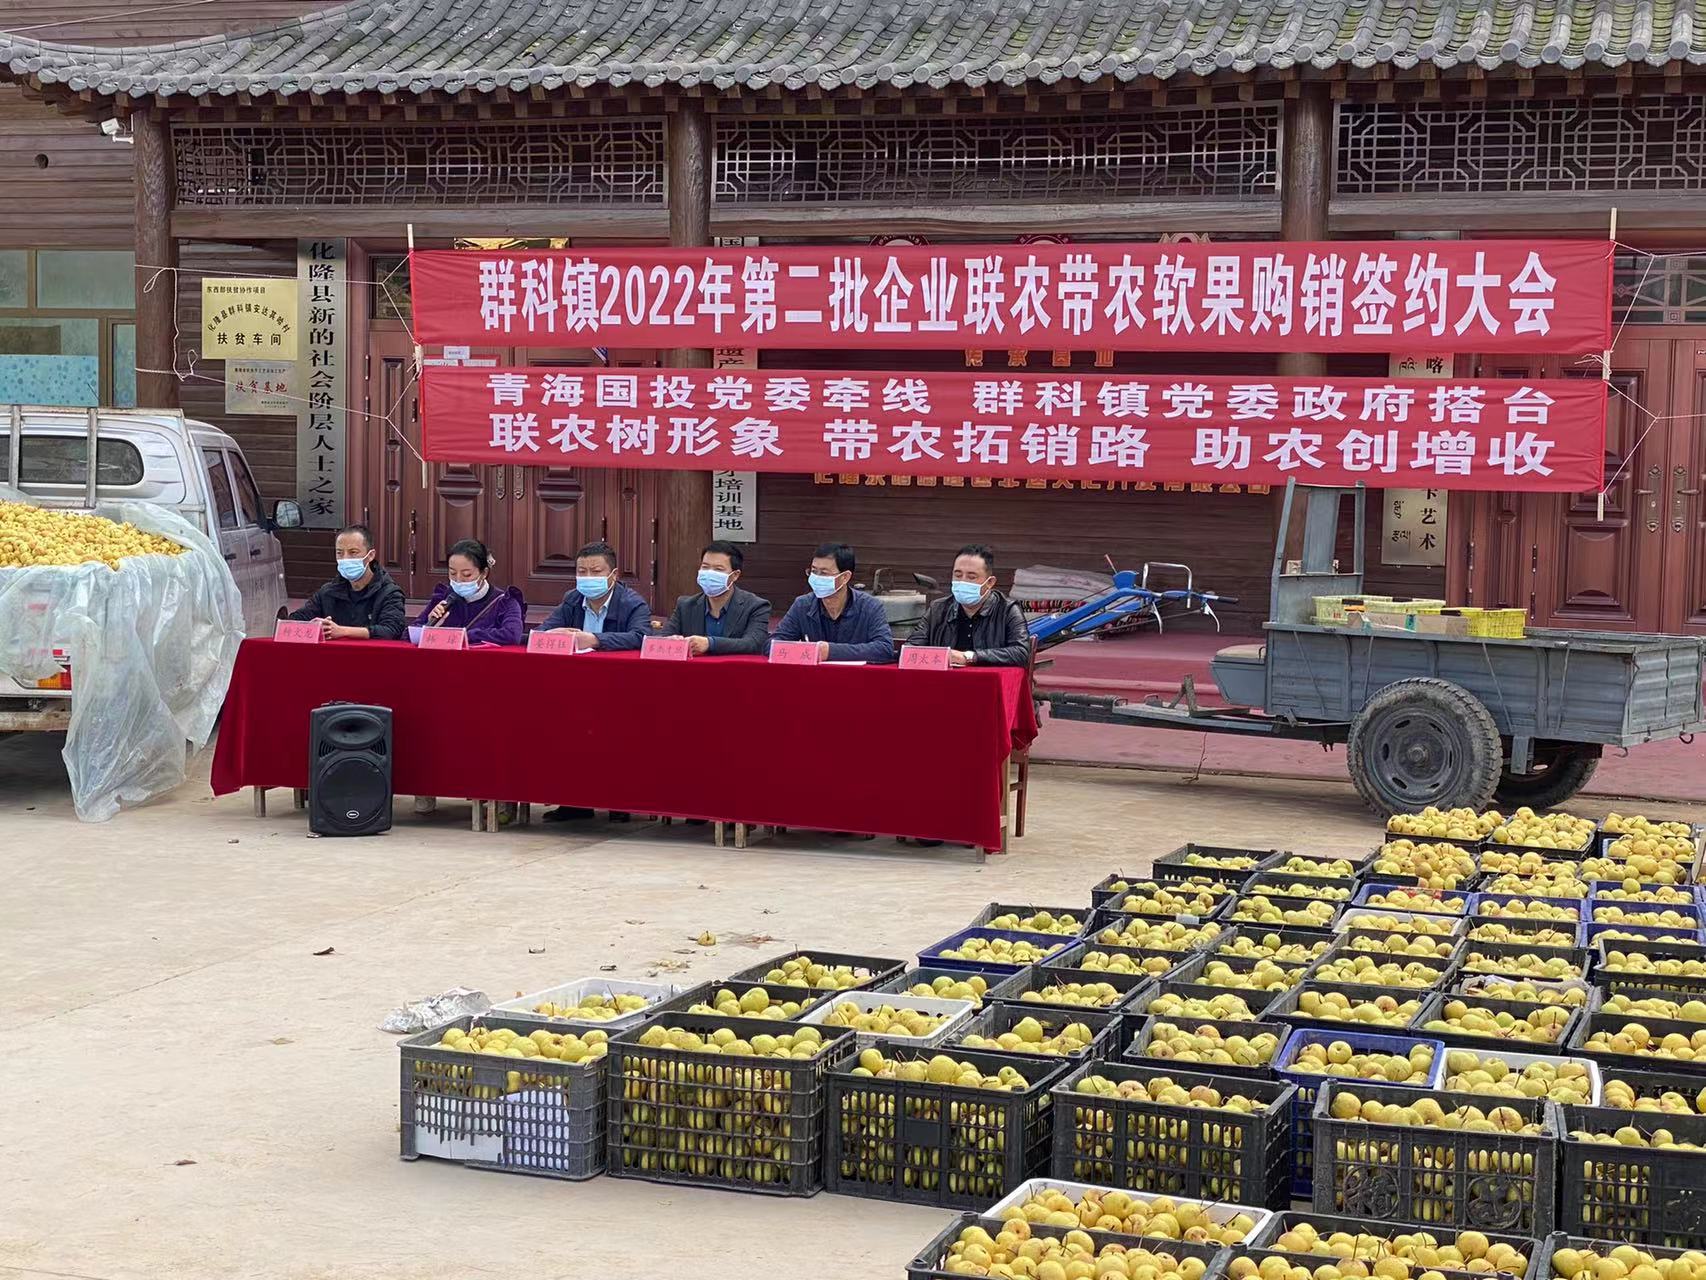 金沙电子(中国)集团有限公司驻乙沙二村工作队积极帮助解决农产品滞销